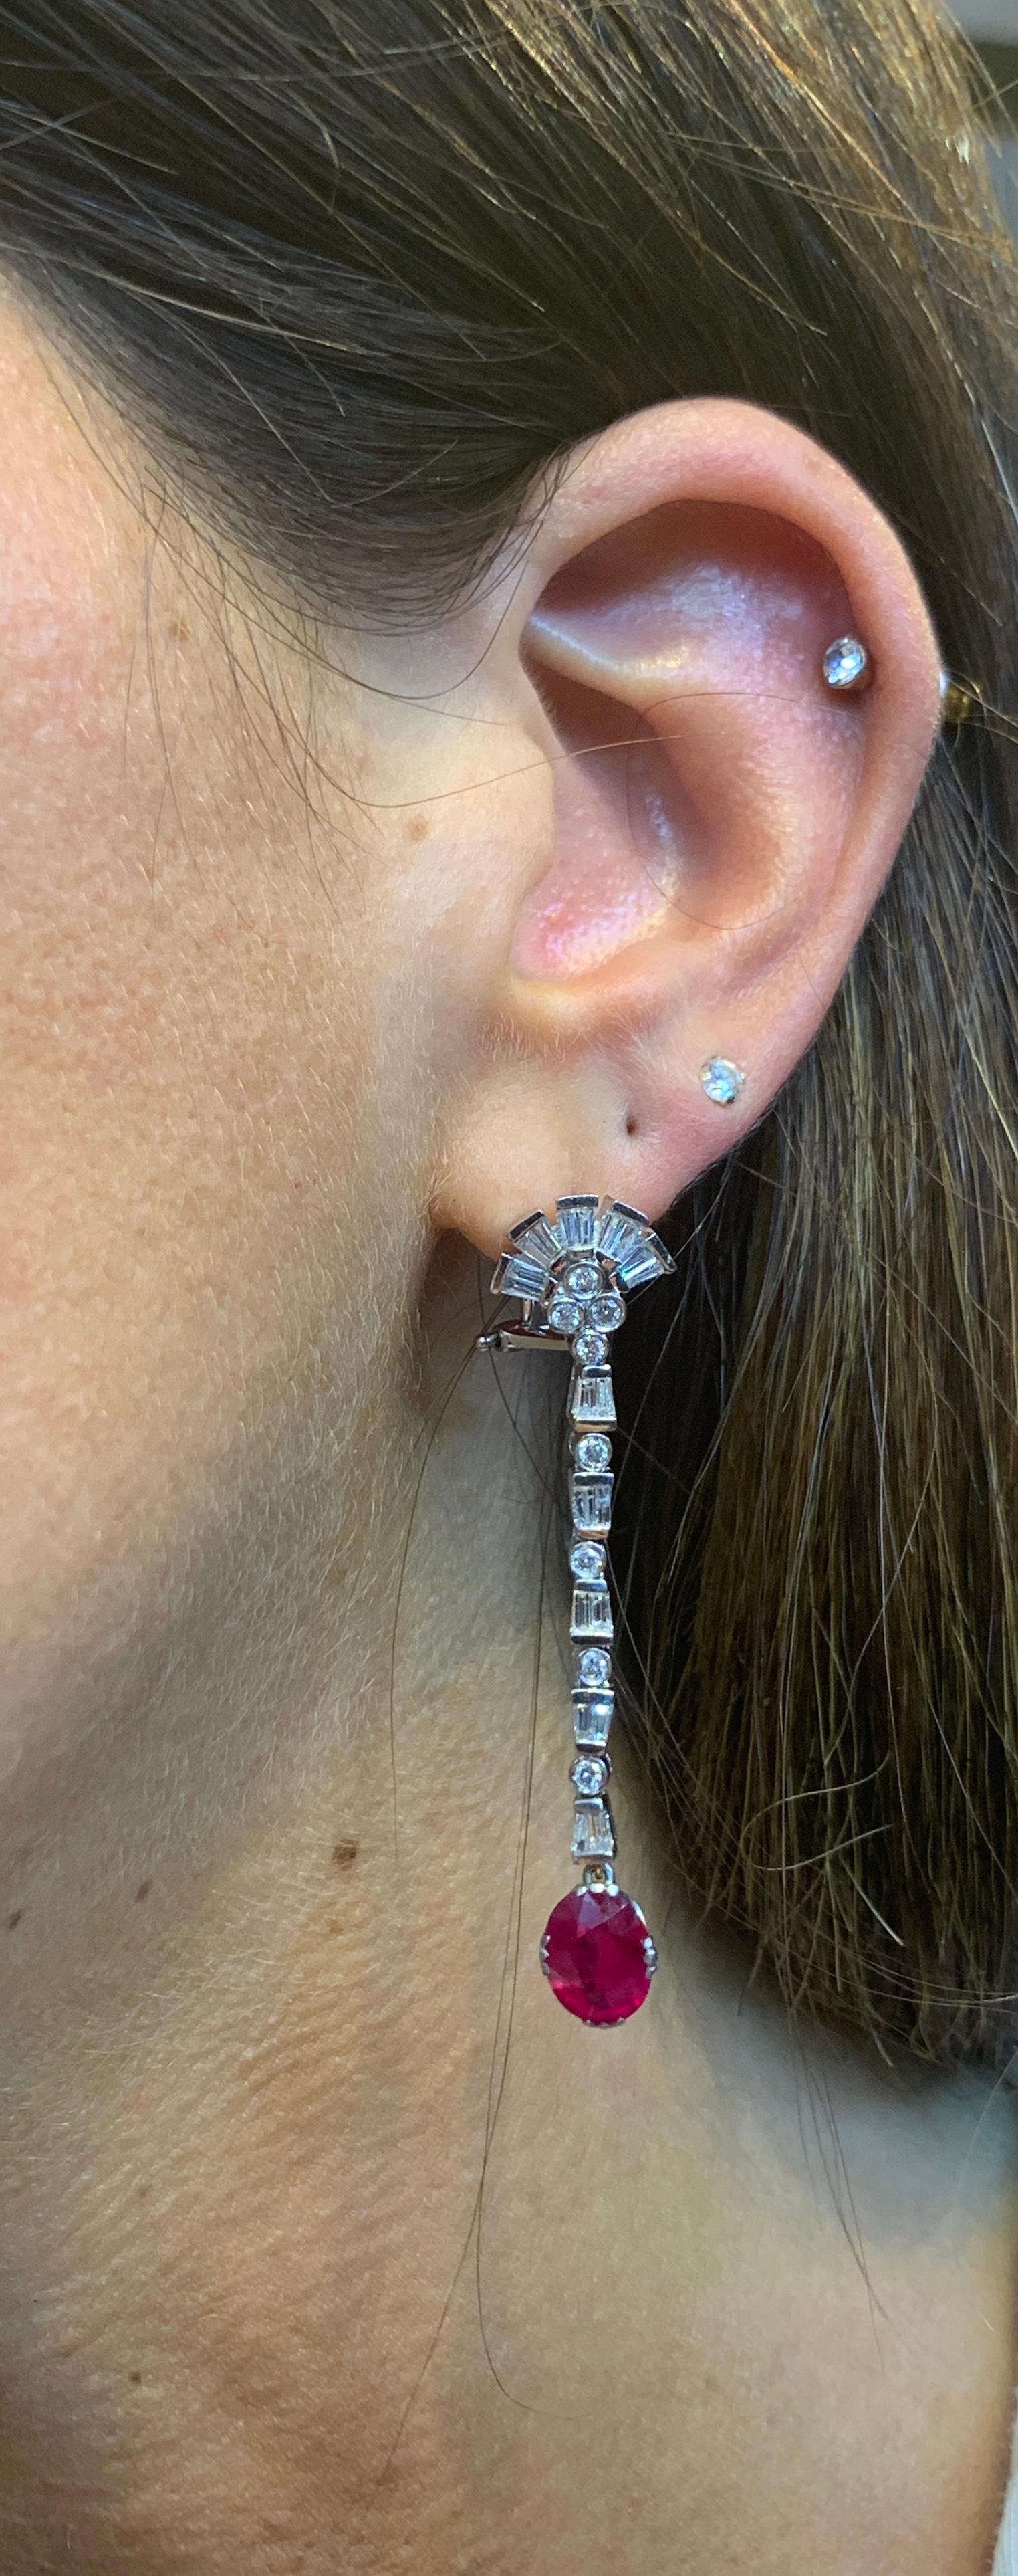 ffa earrings